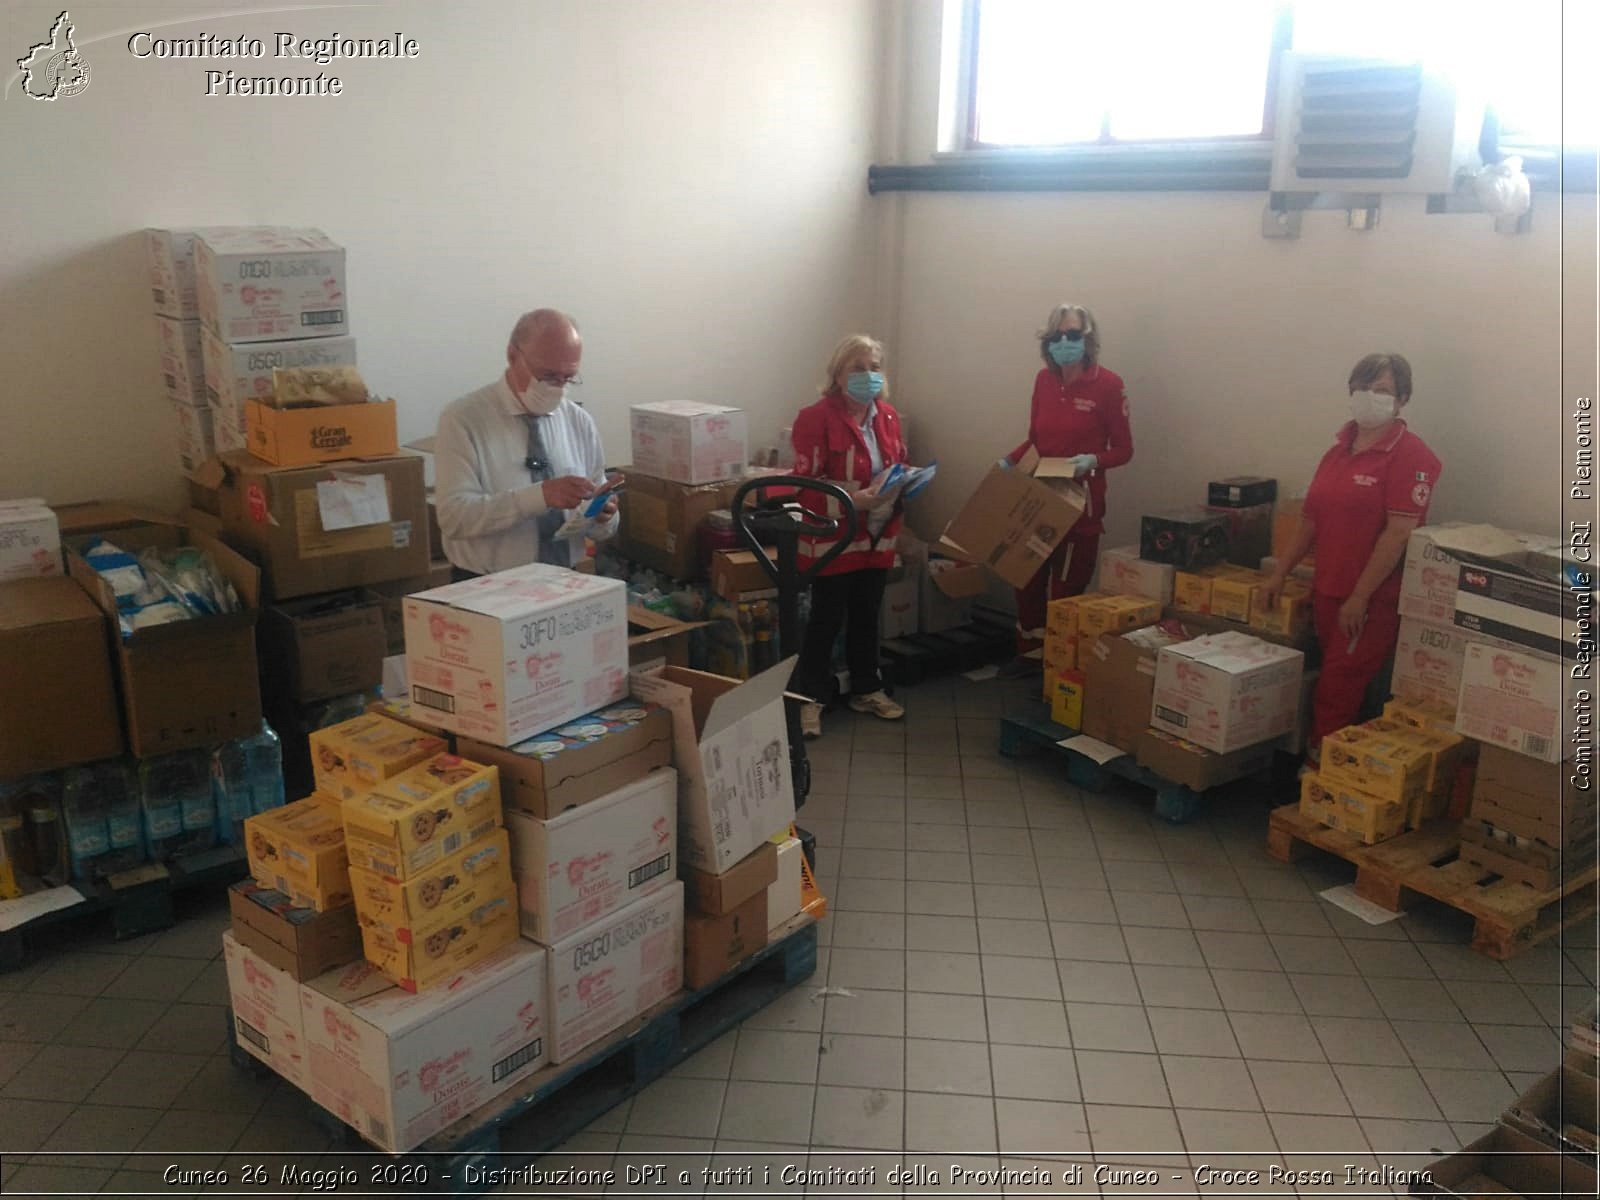 Cuneo 26 Maggio 2020 - Distribuzione DPI a tutti i Comitati della Provincia di Cuneo - Croce Rossa Italiana